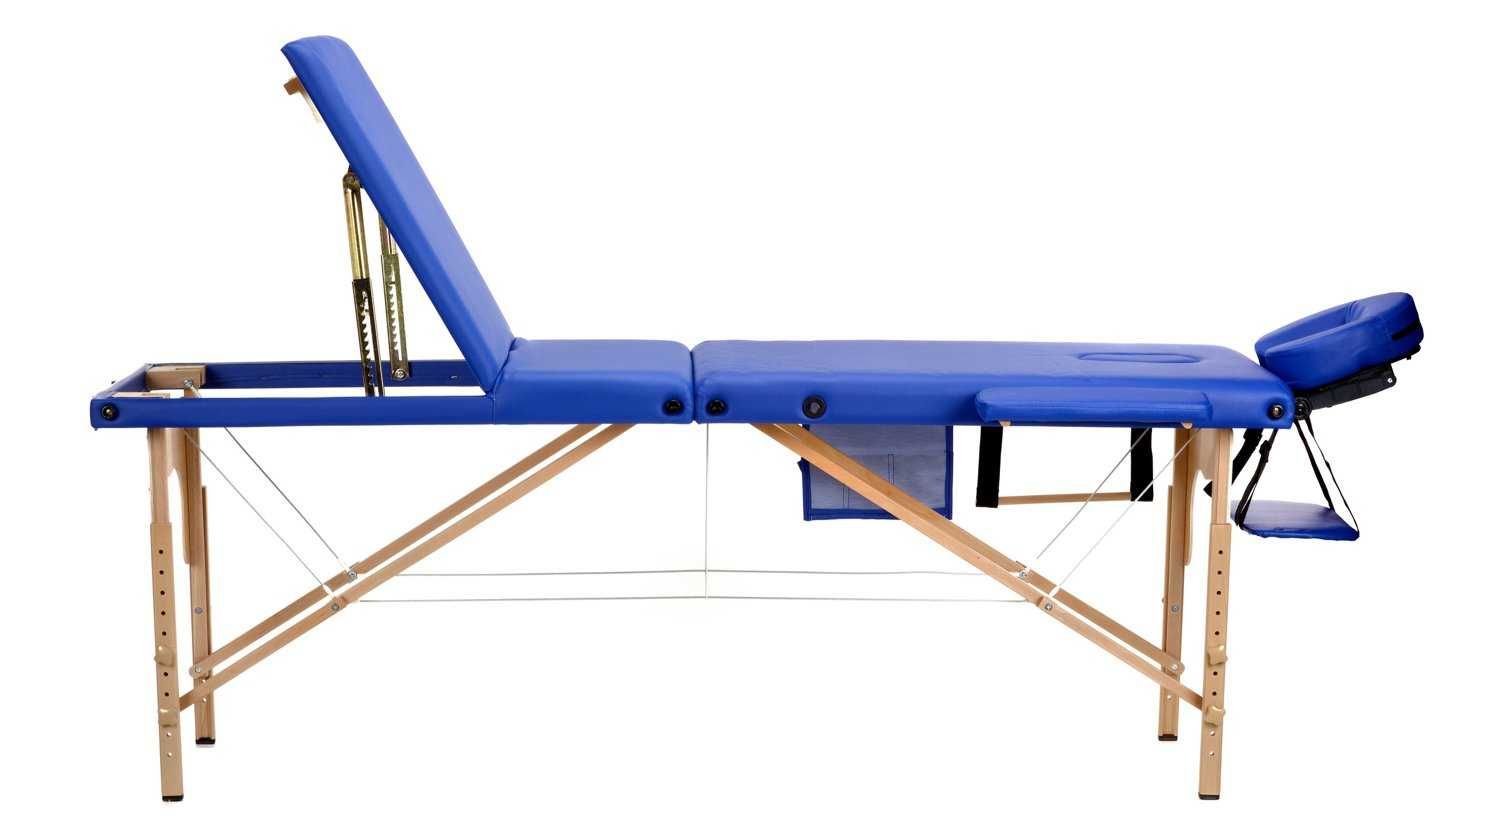 Stół, łóżko do masażu 3-segmentowe drewniane